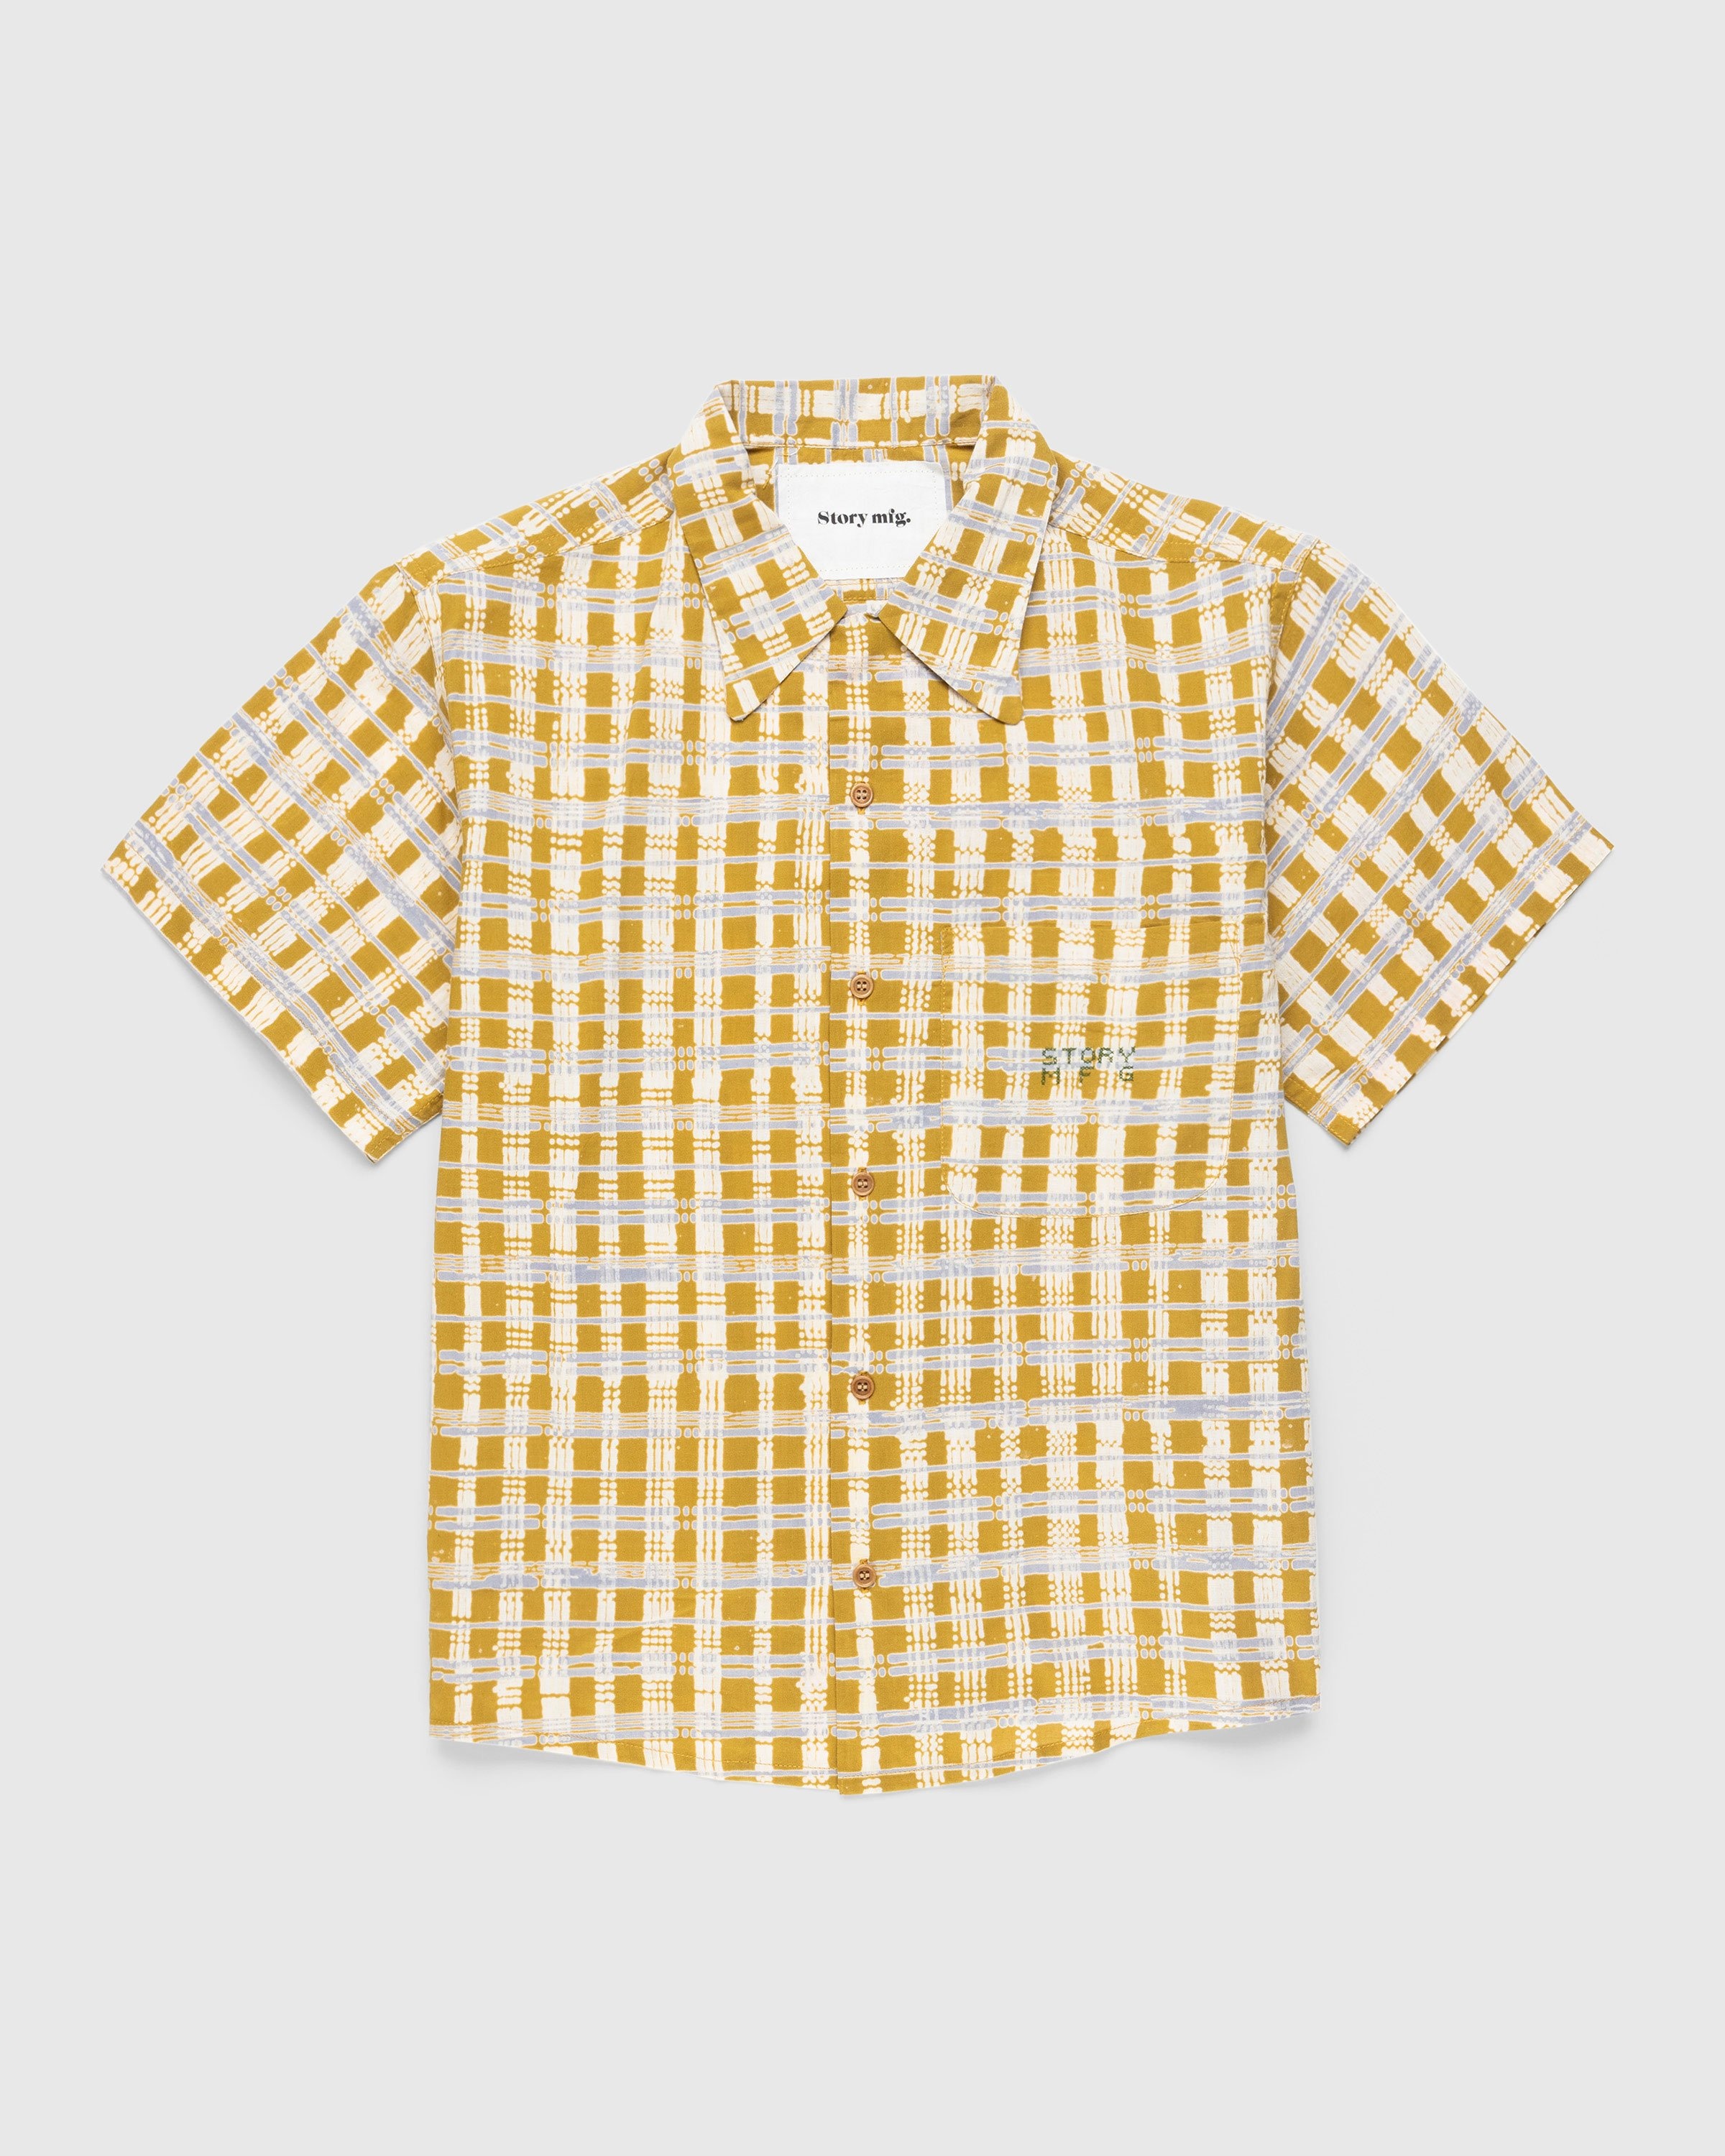 Story mfg. – Shore Shirt Check Block - Shirts - Yellow - Image 1